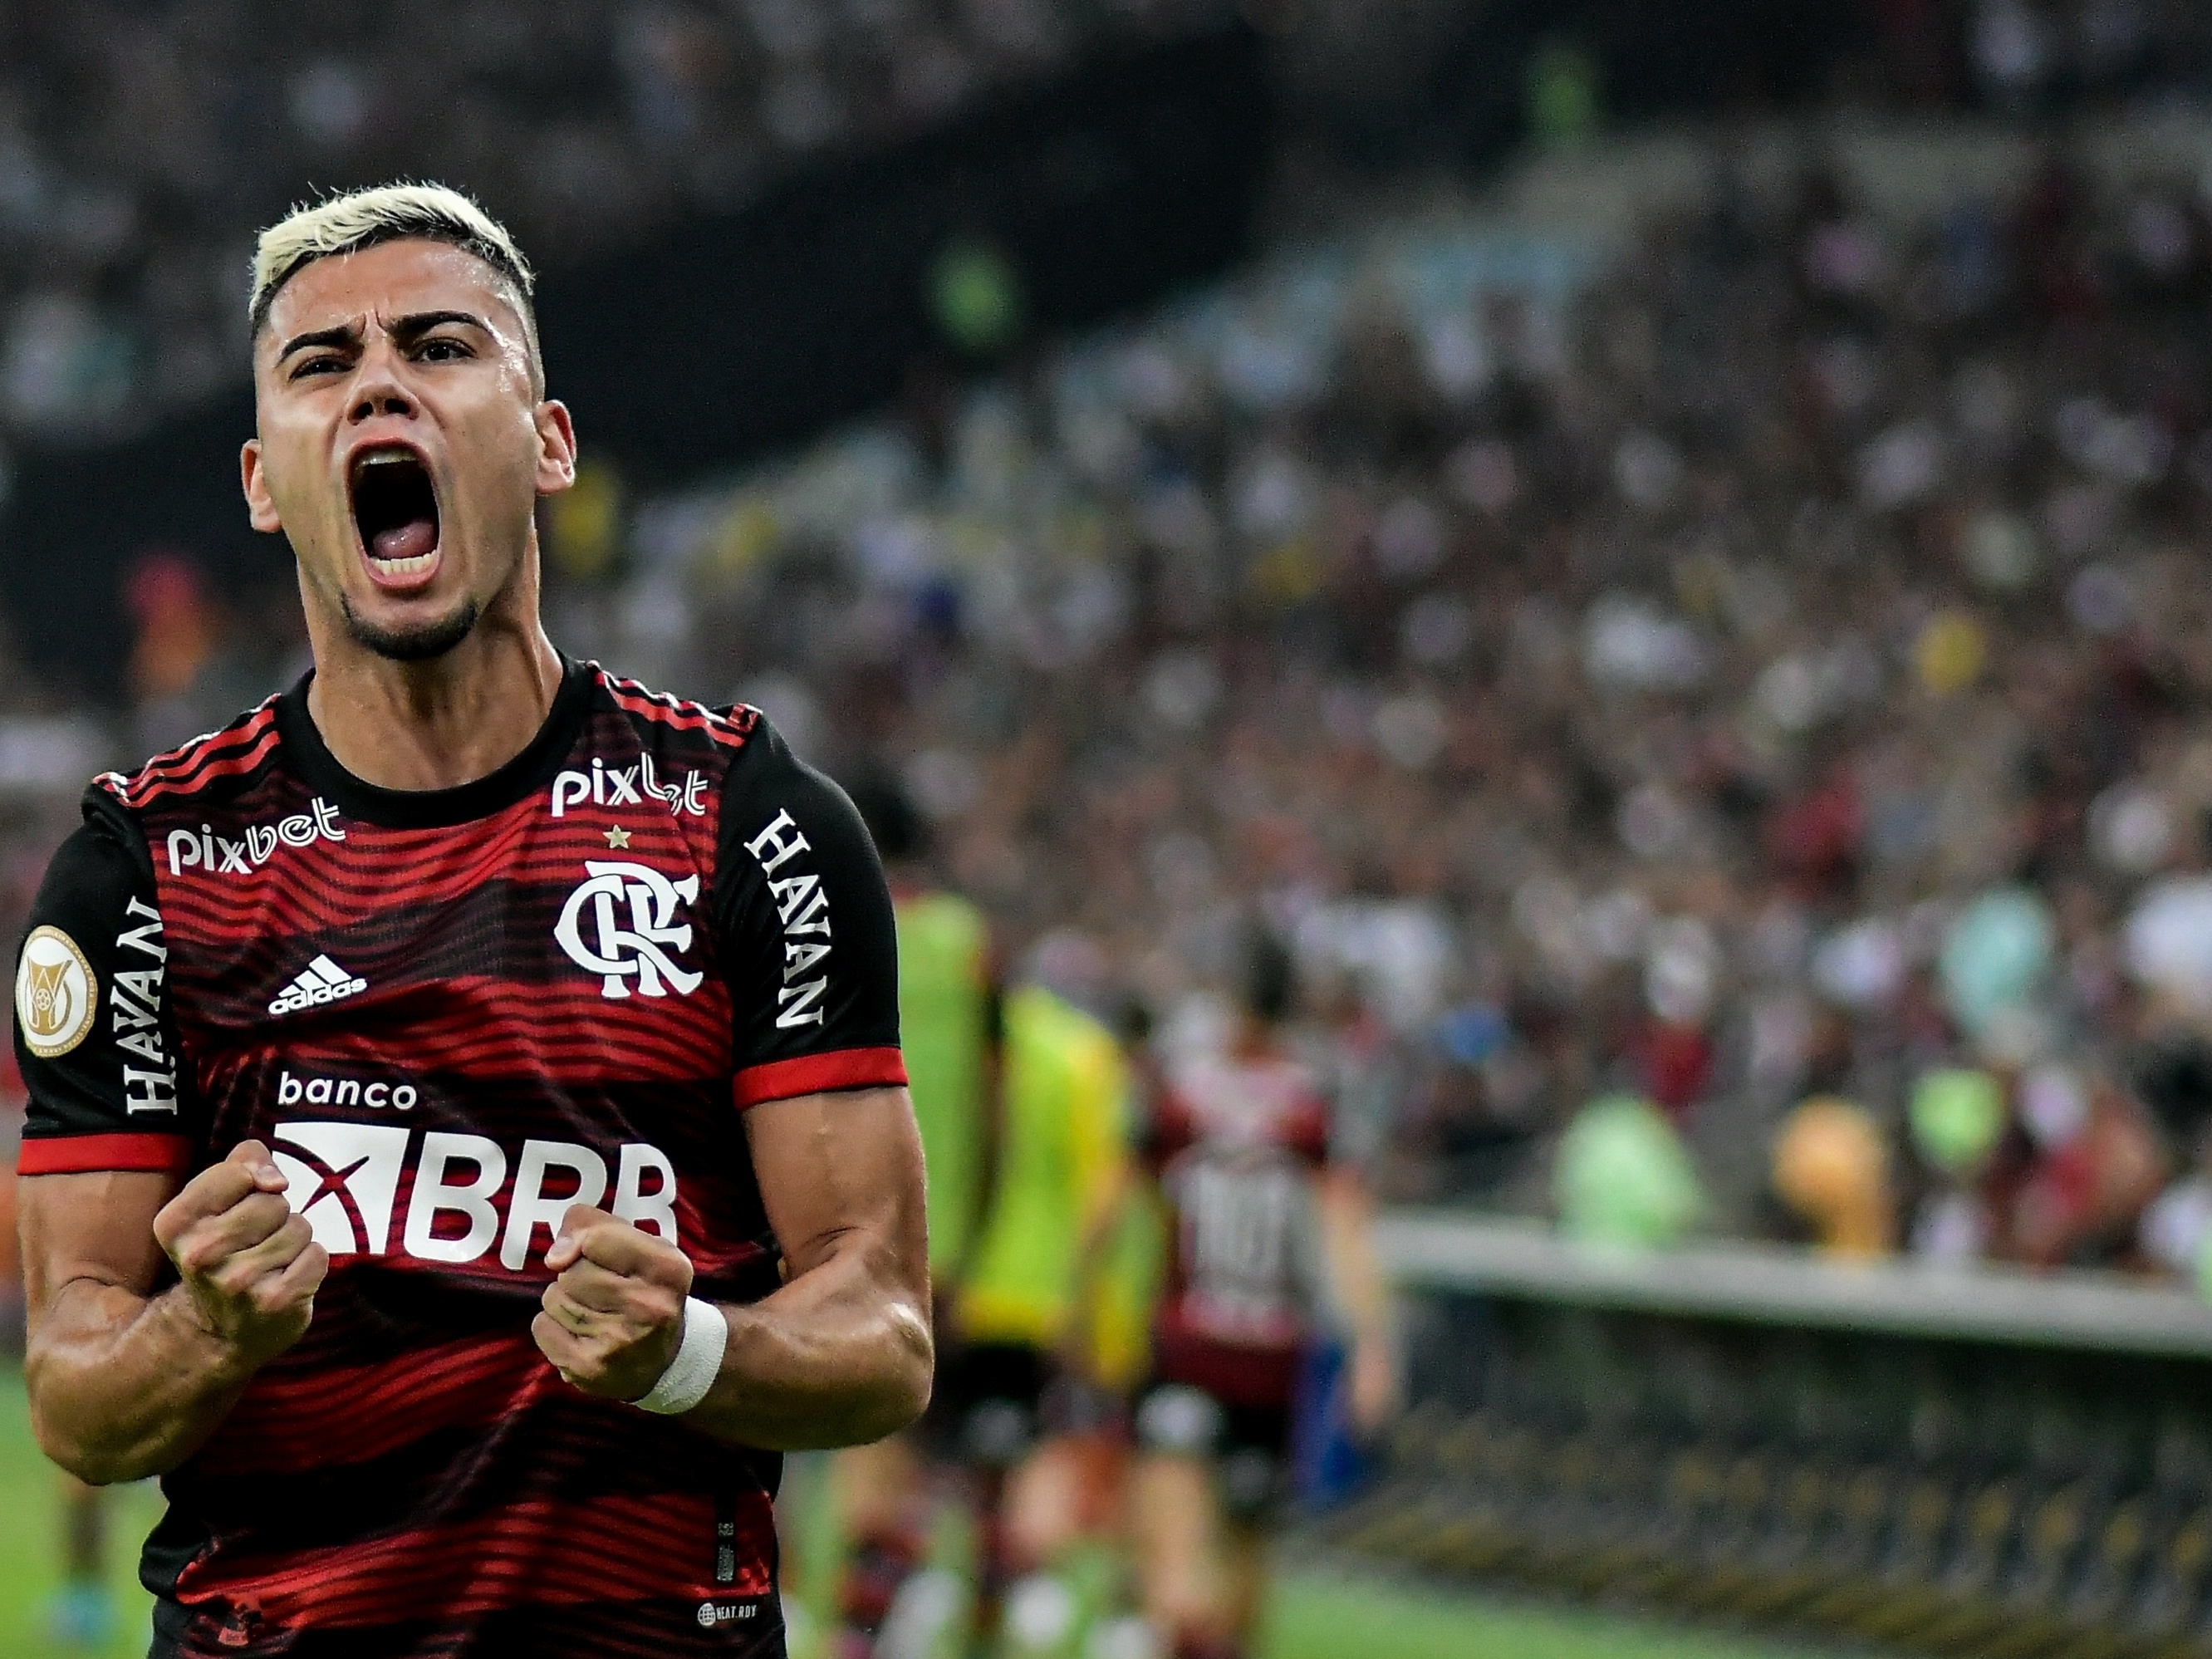 Aconteceu agora: Flamengo perde jogador importante para o jogo